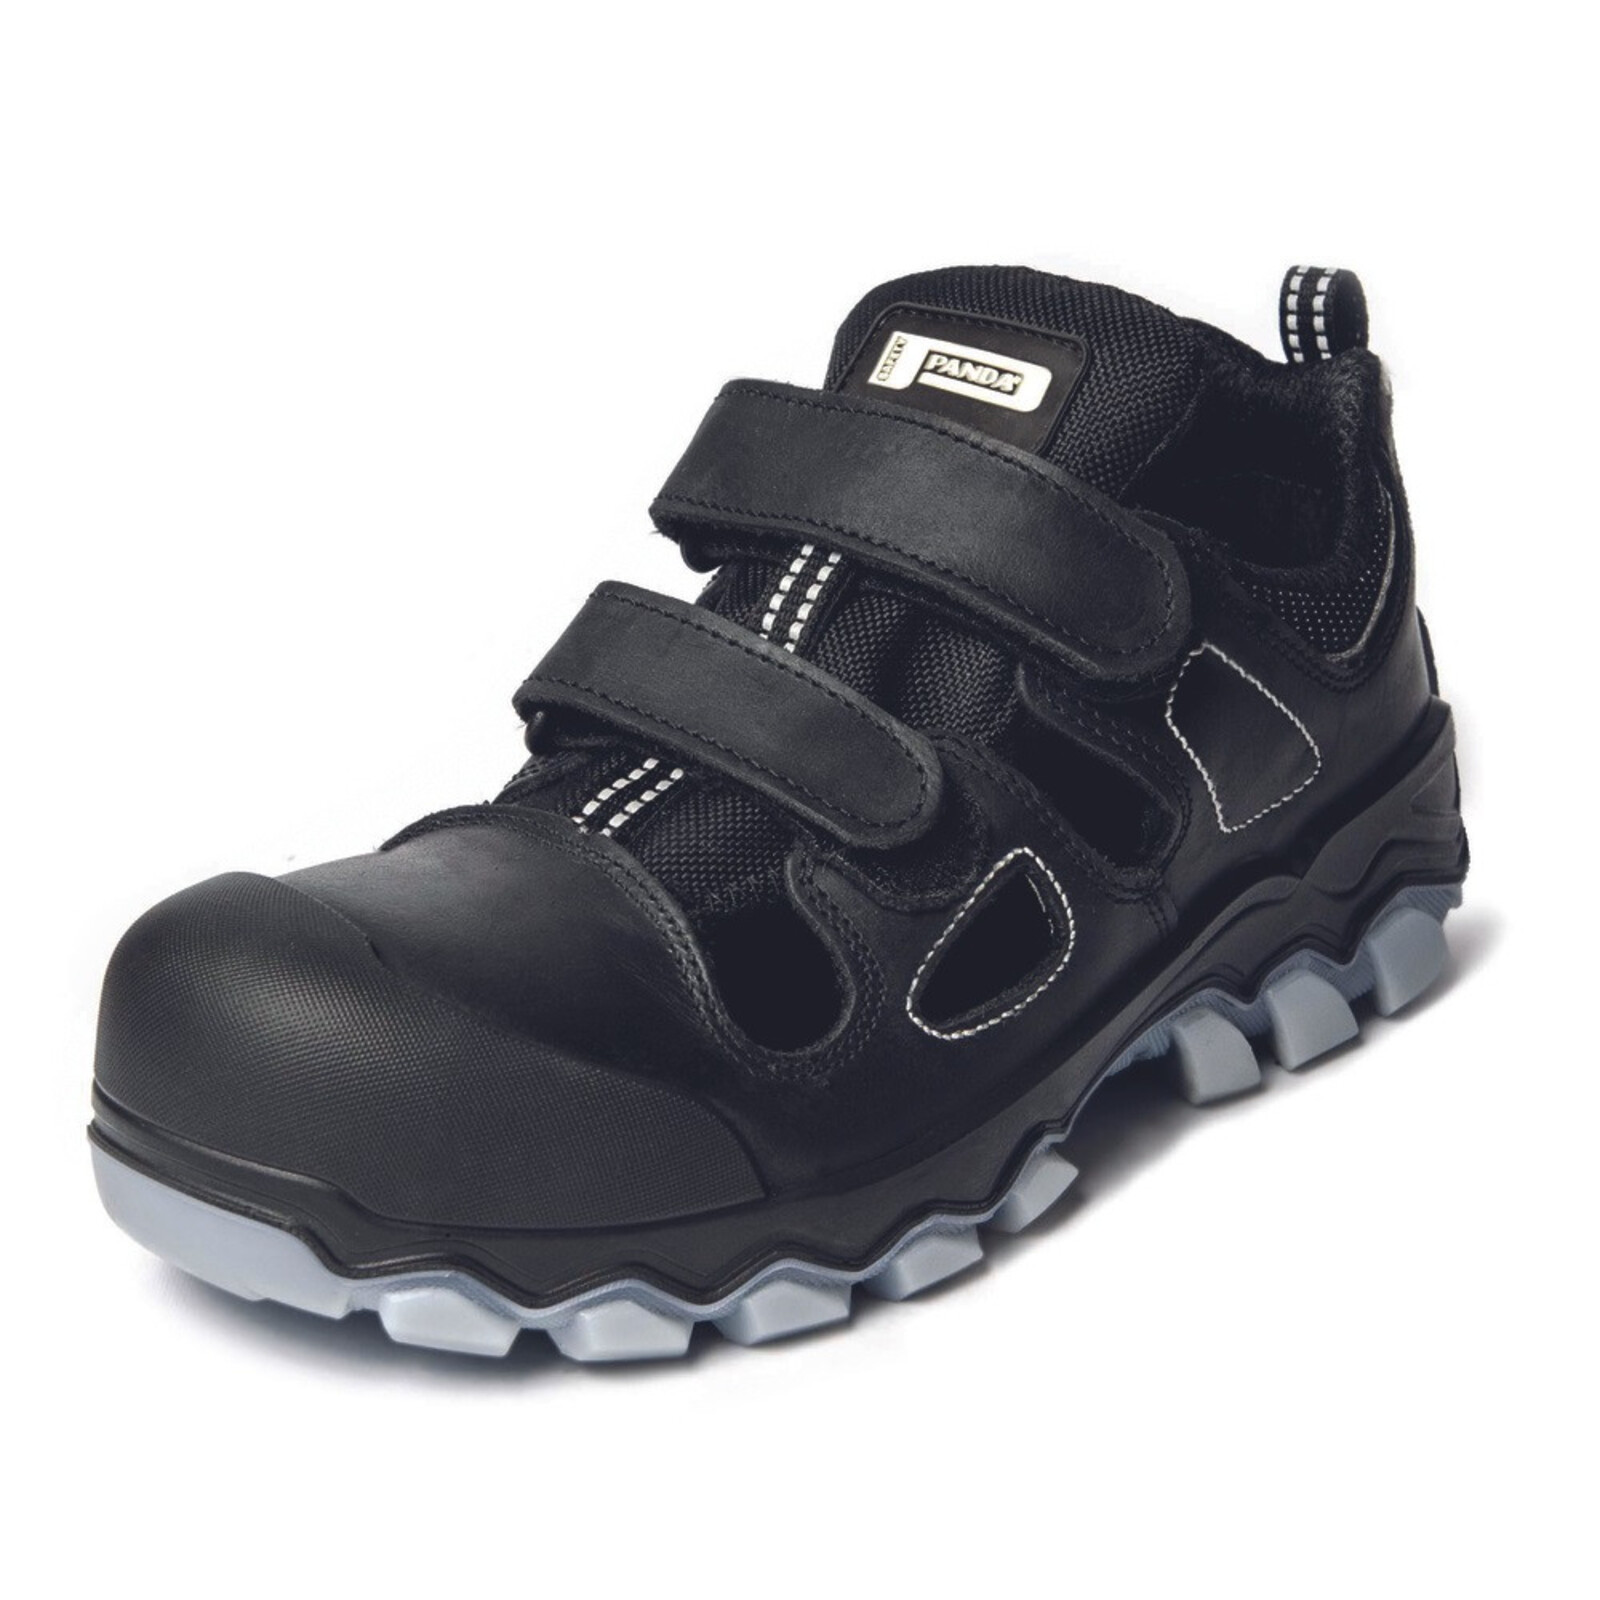 Bezpečnostné sandále Panda Techo No. Two MF S1P SRC - veľkosť: 41, farba: čierna/sivá